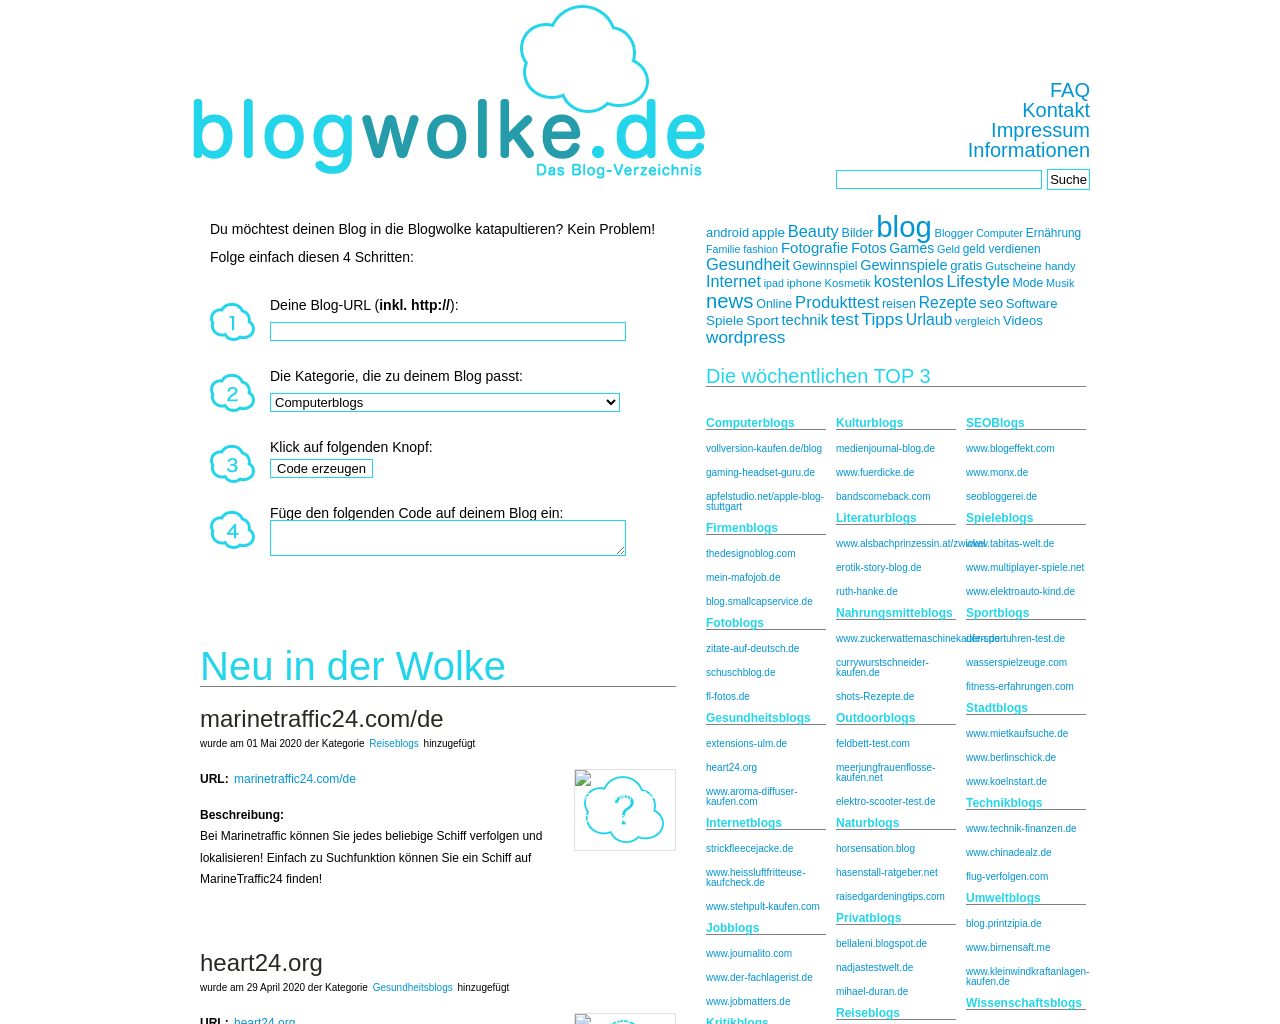 blogwolke.de